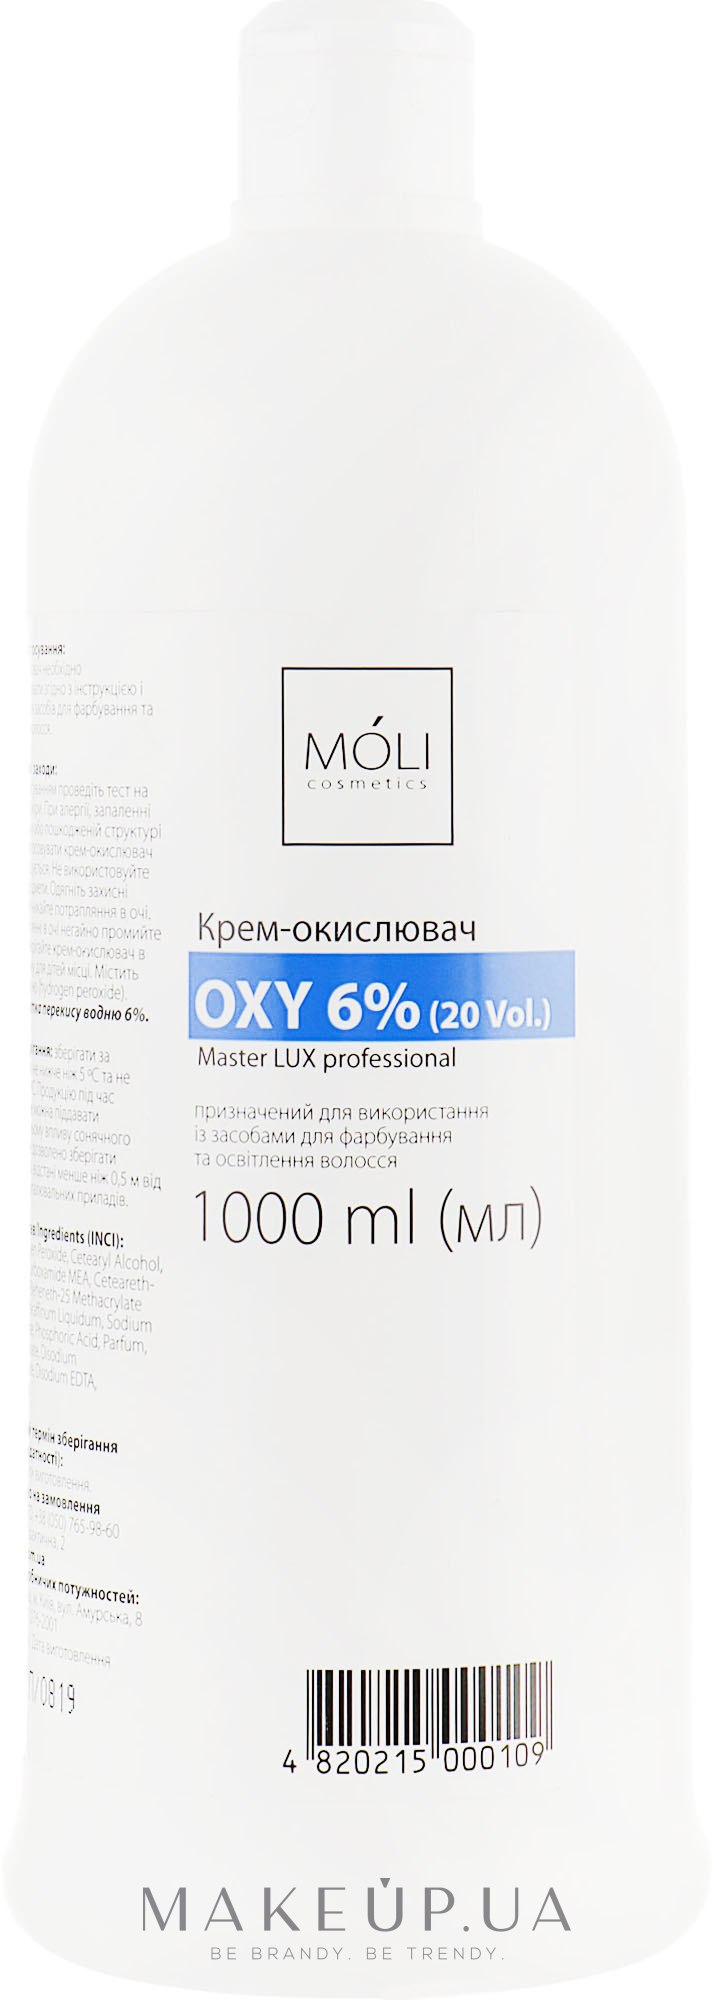 Окислювальна емульсія 6% - Moli Cosmetics Oxy 6% (20 Vol.) — фото 1000ml